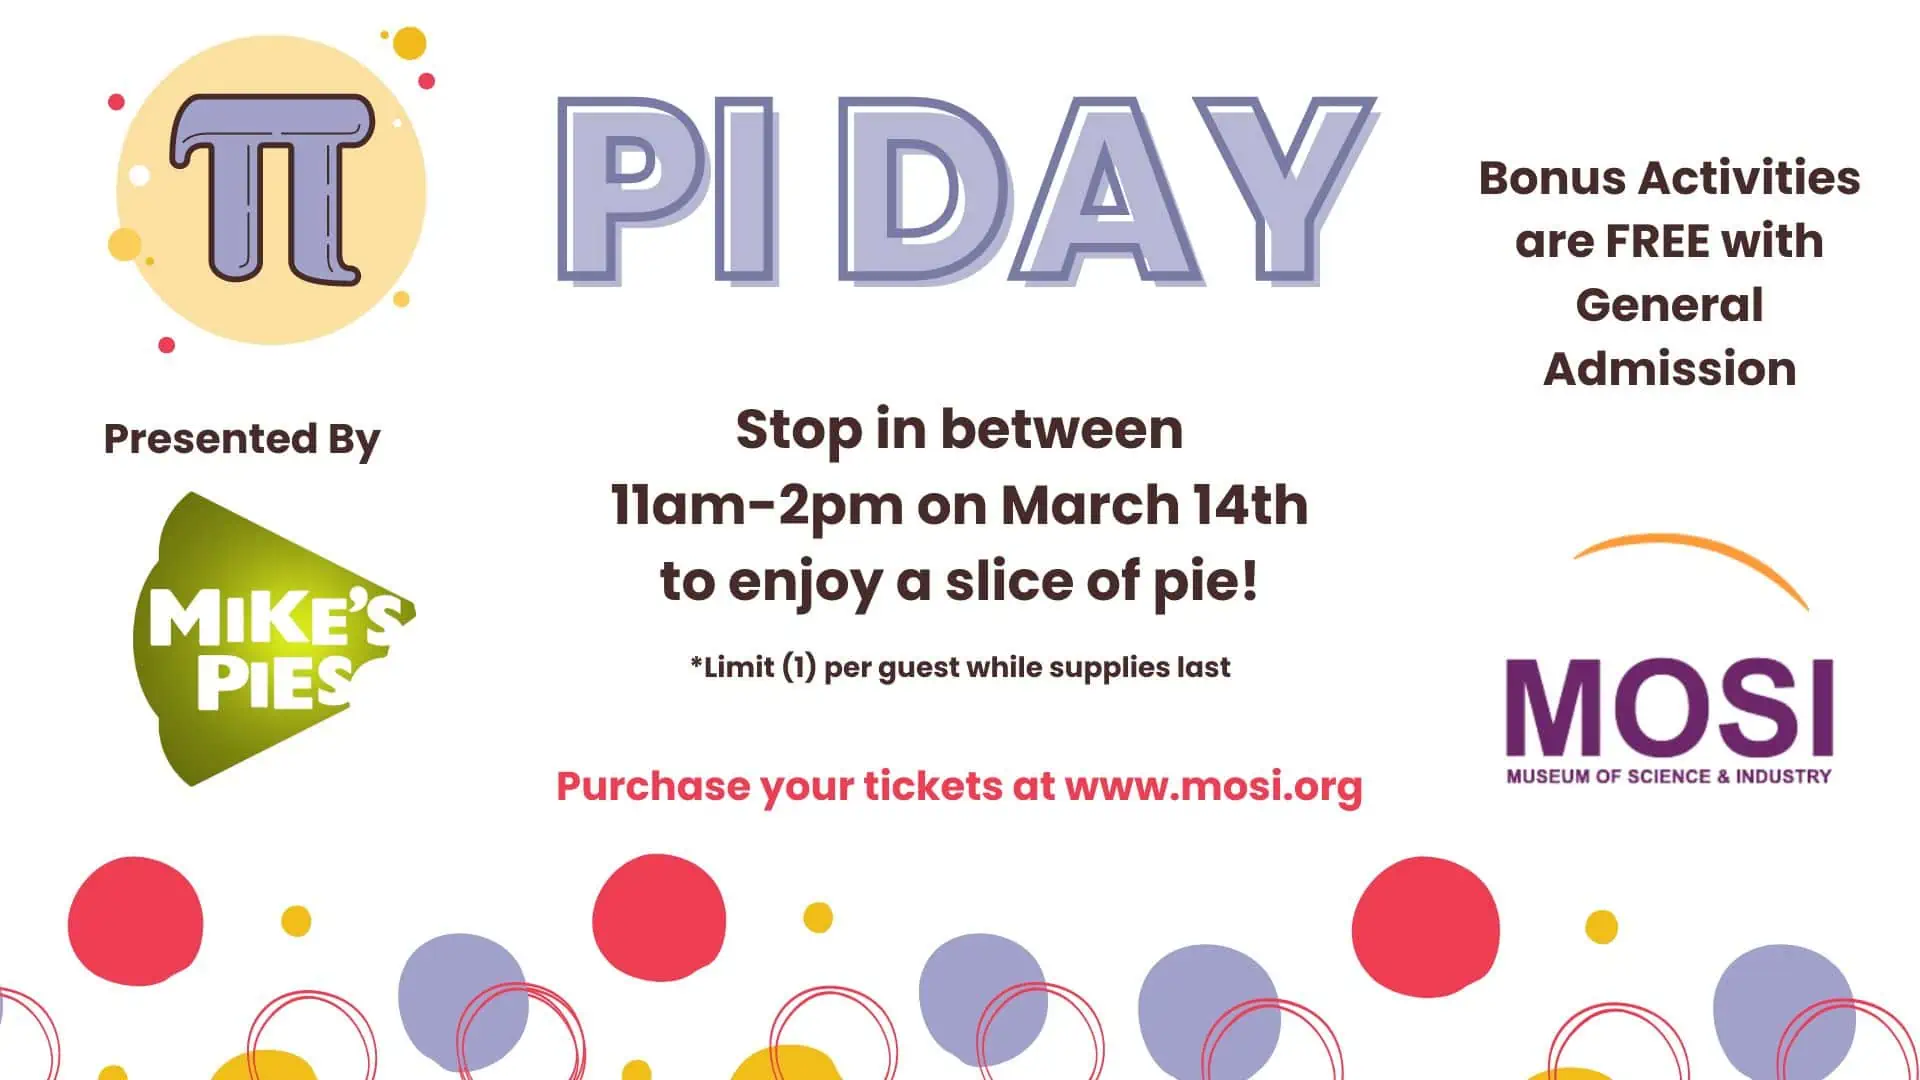 Pi Day at MOSI - That's So Tampa